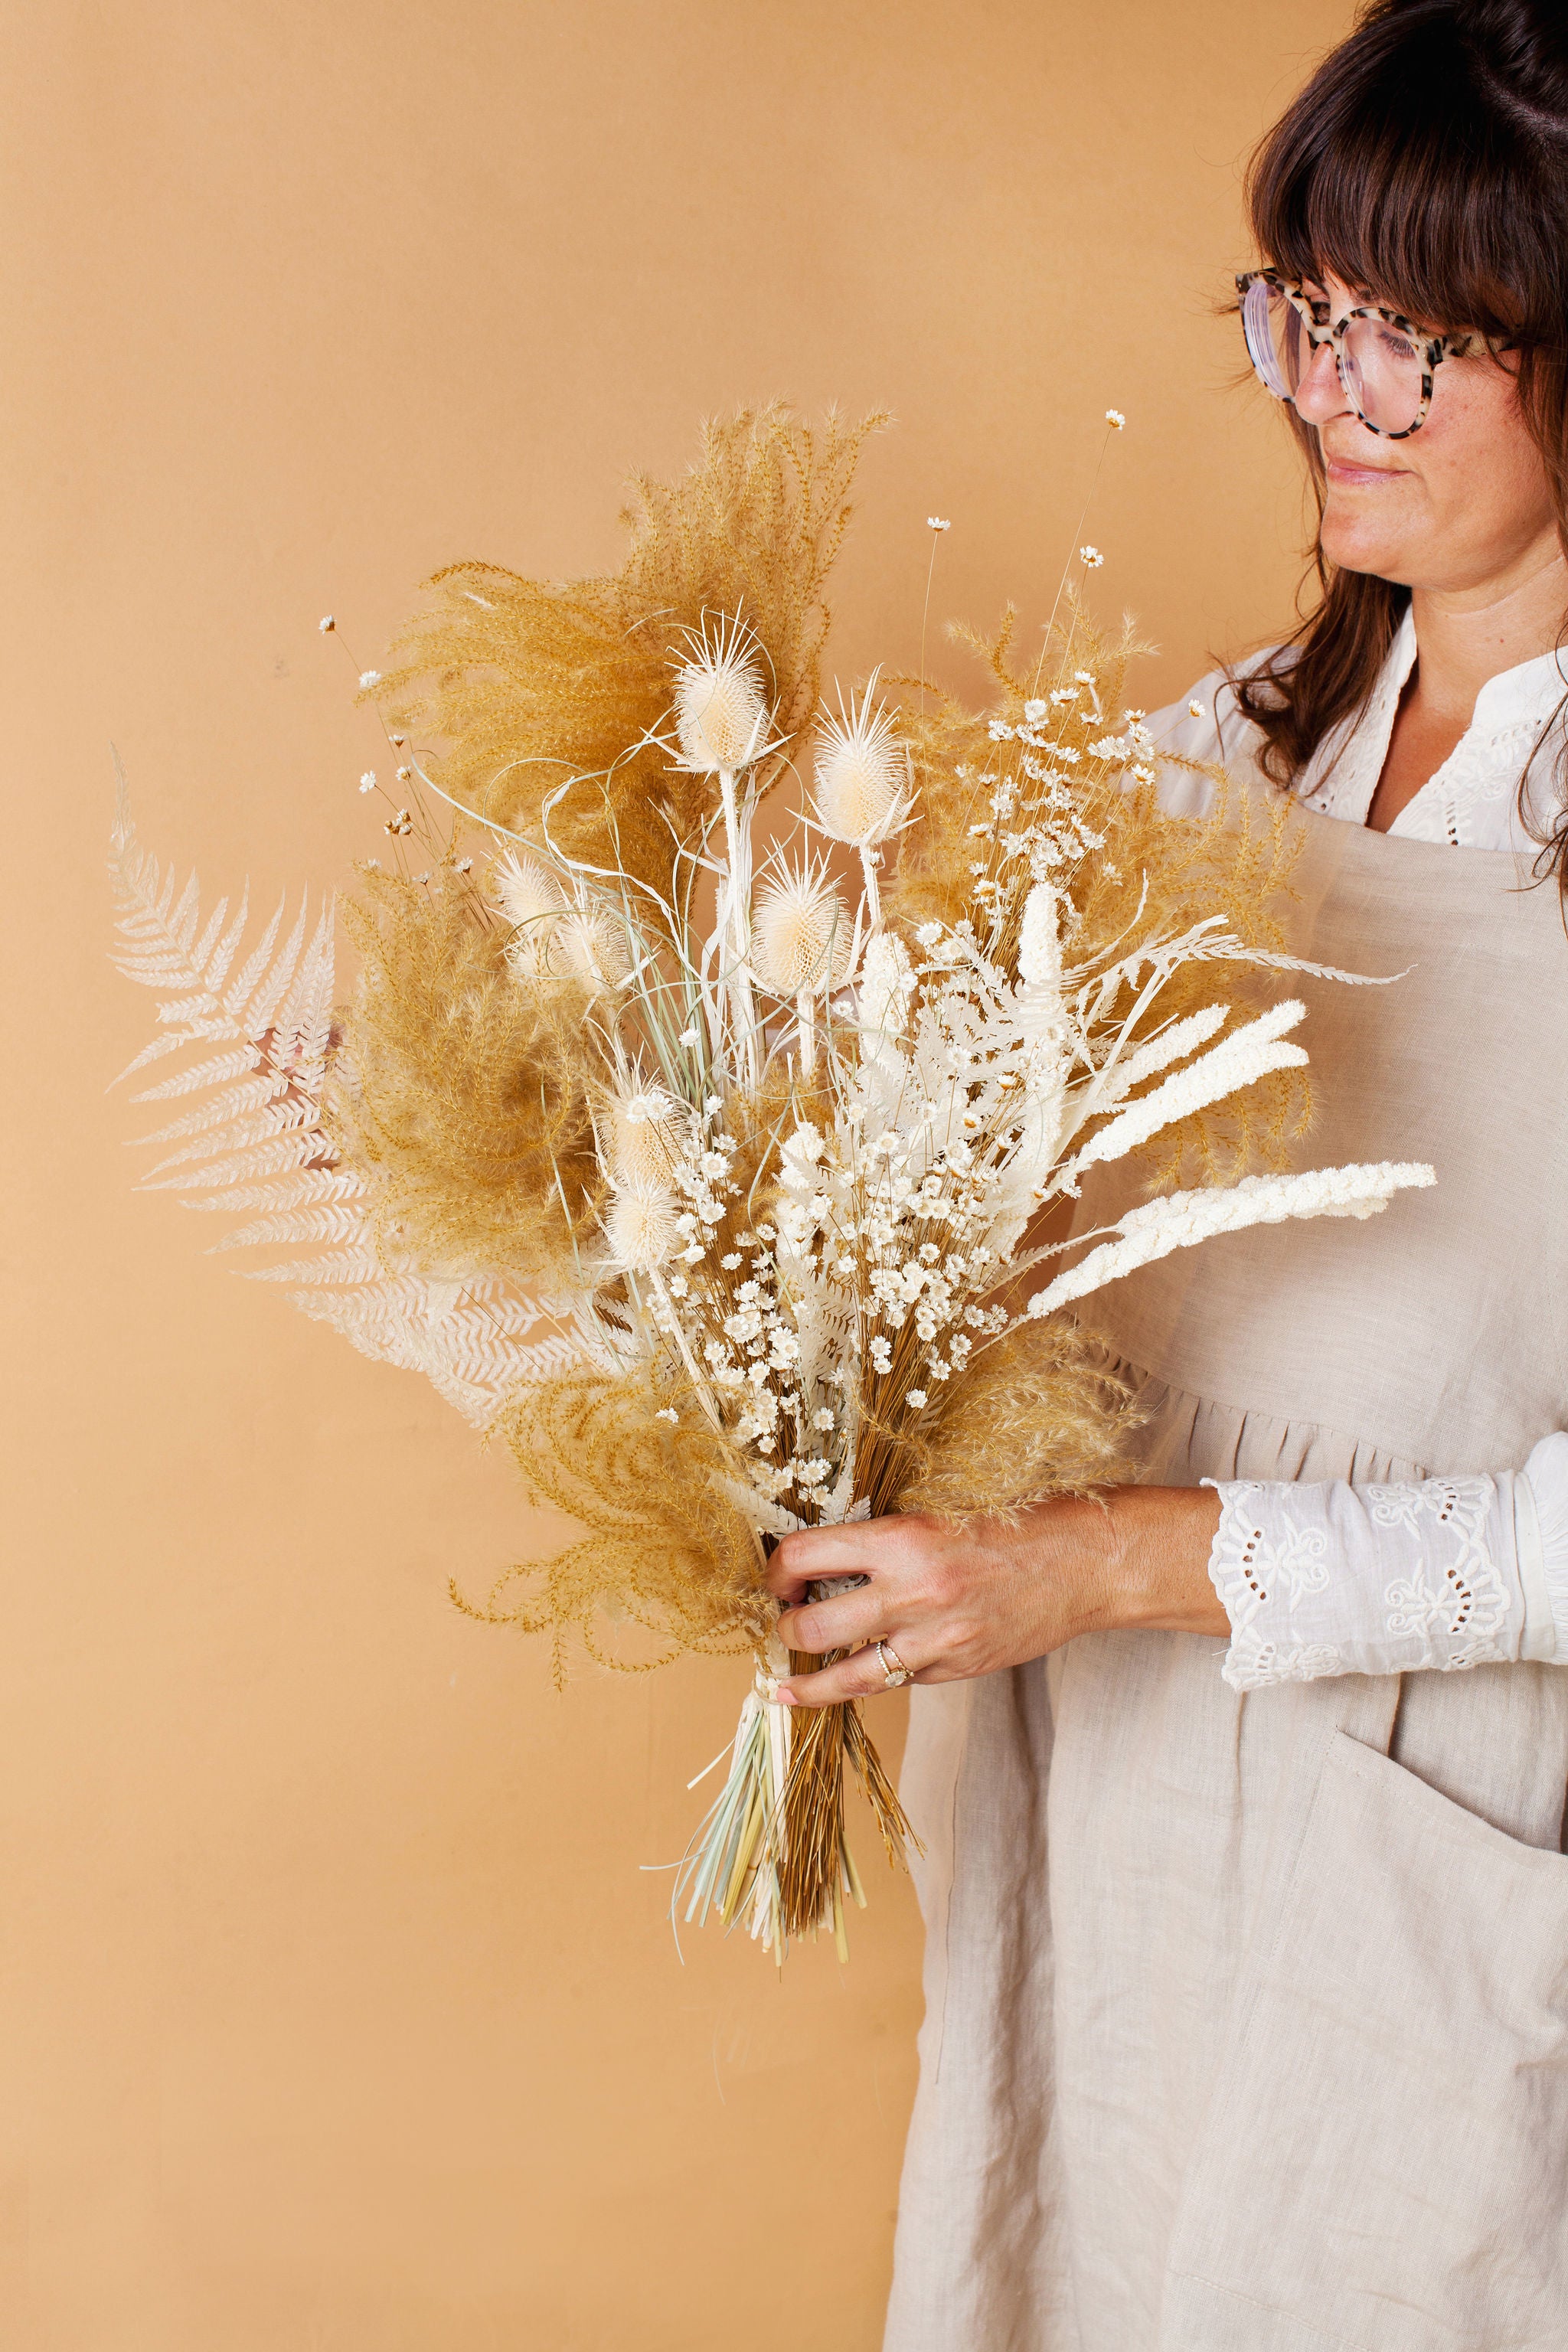 Dried flower bouquet | Natural dried bouquet | TANIT FLORIST IRVINE